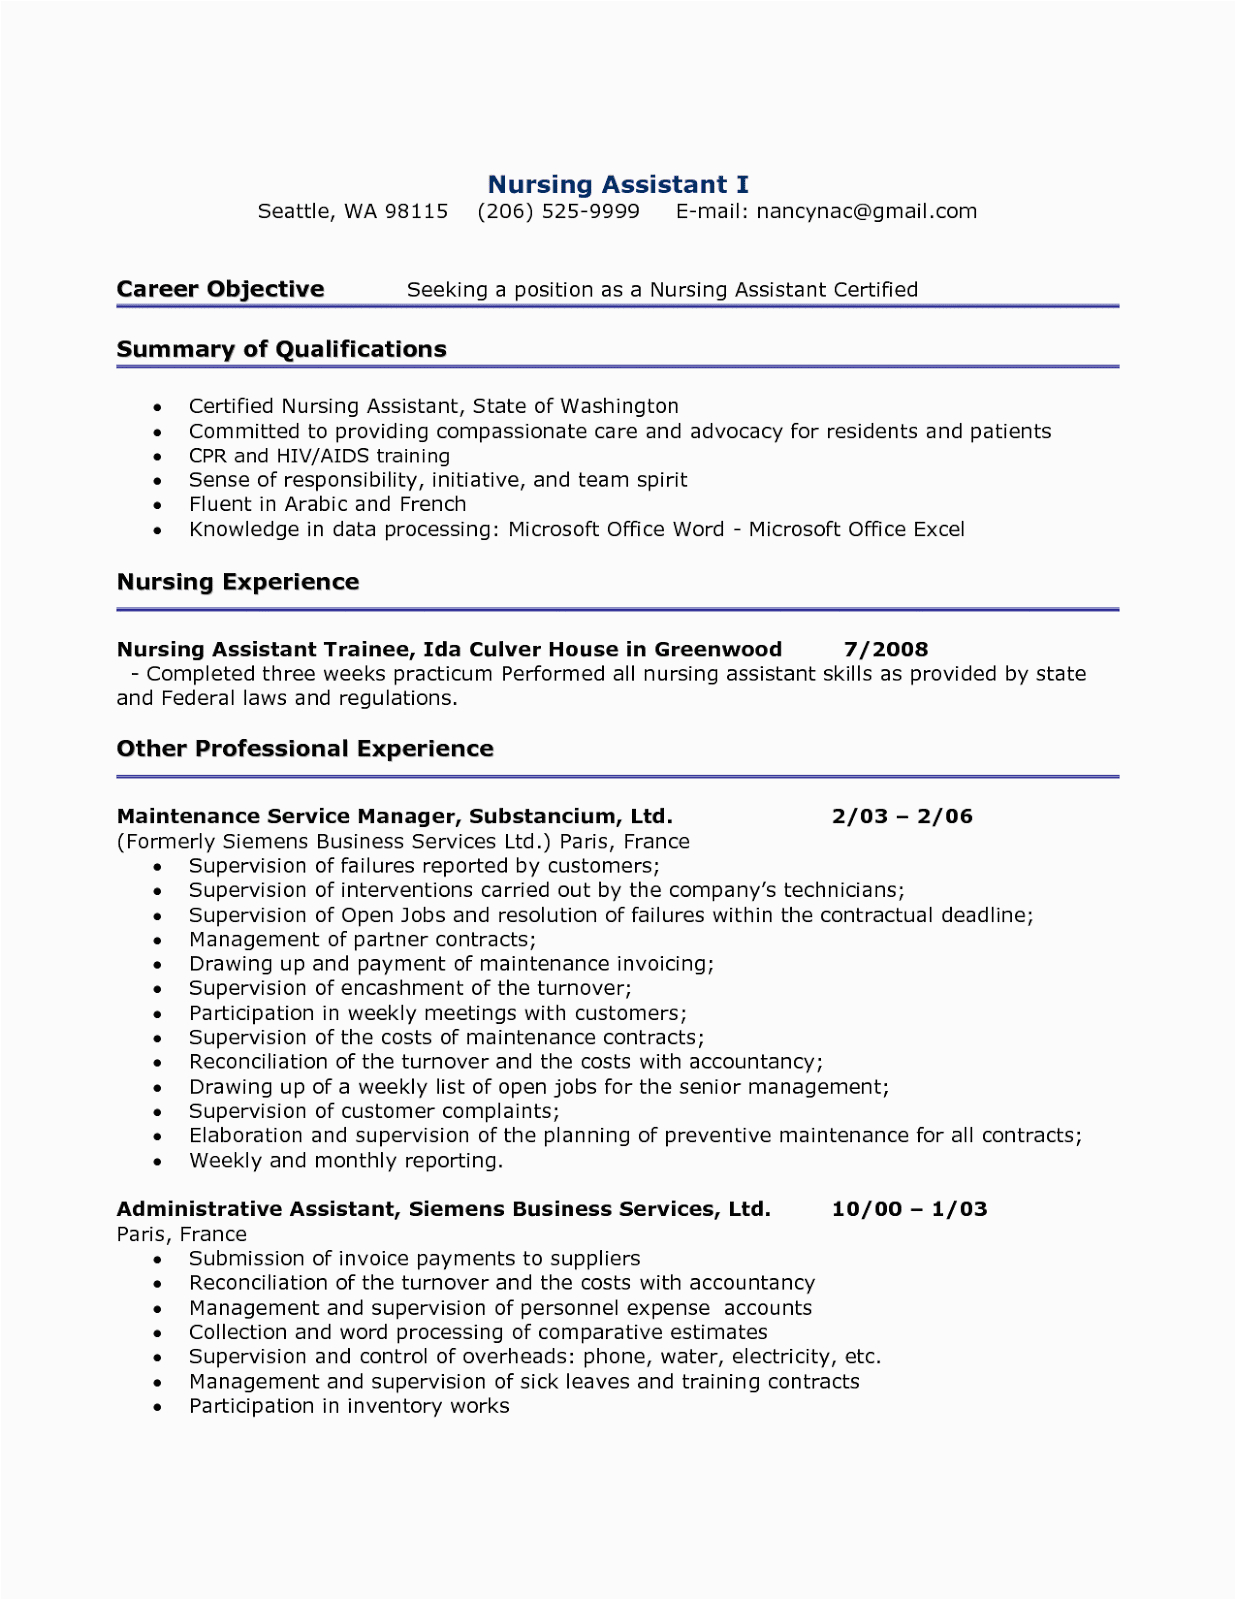 Sample Resume for A Nursing assistant Job Resume Sample for Nursing assistant